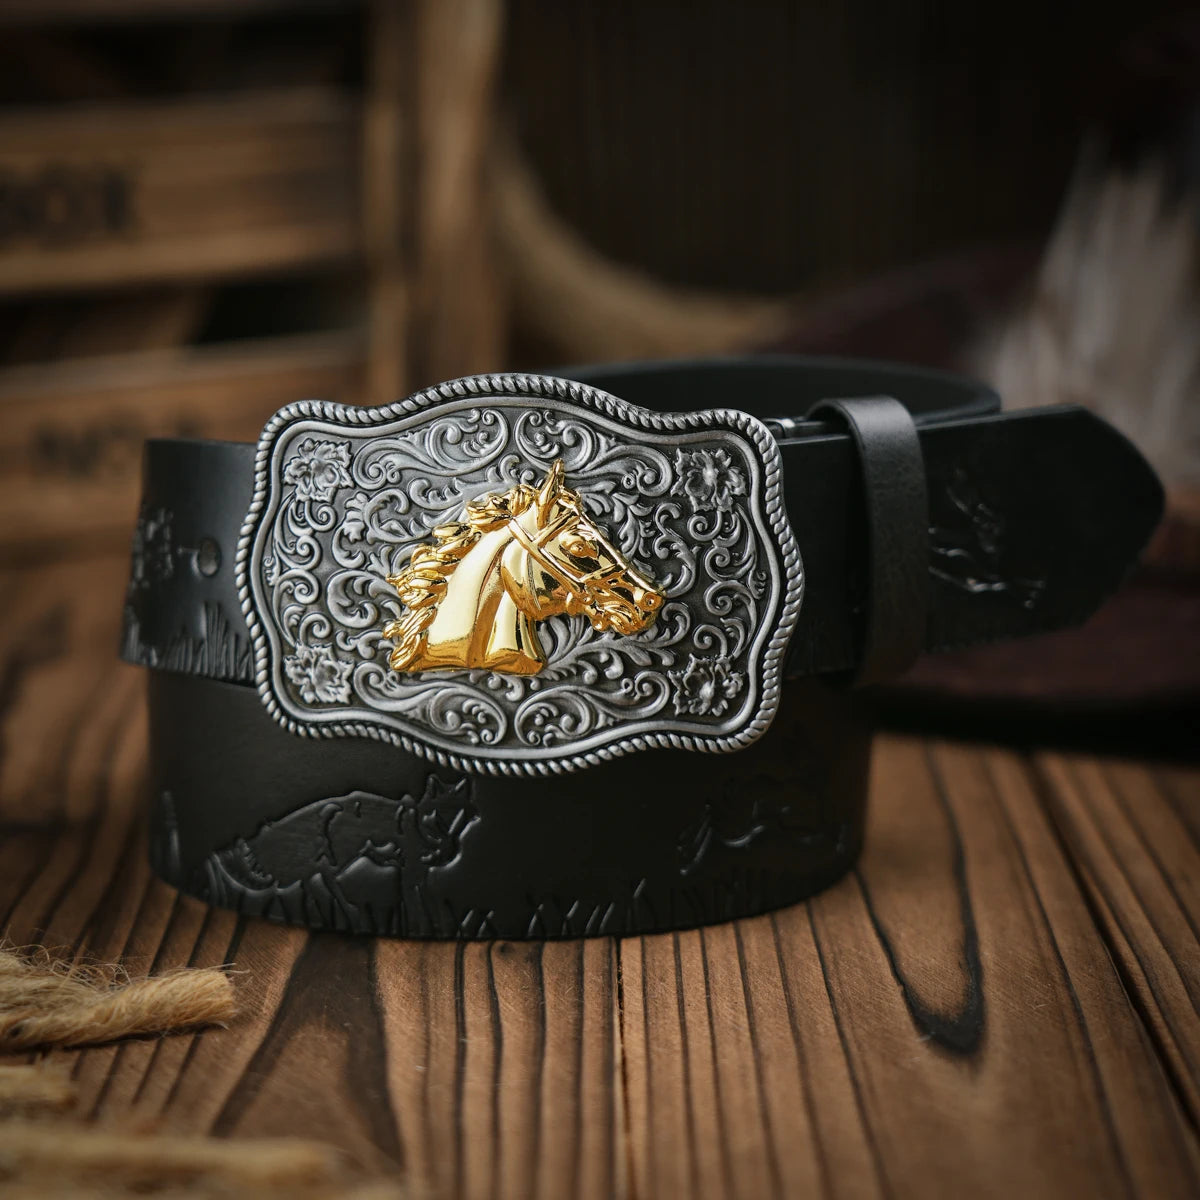 Western Cowboy Leather Buckle Belts Horse Pattern Floral Engraved Buckle Belt for Men